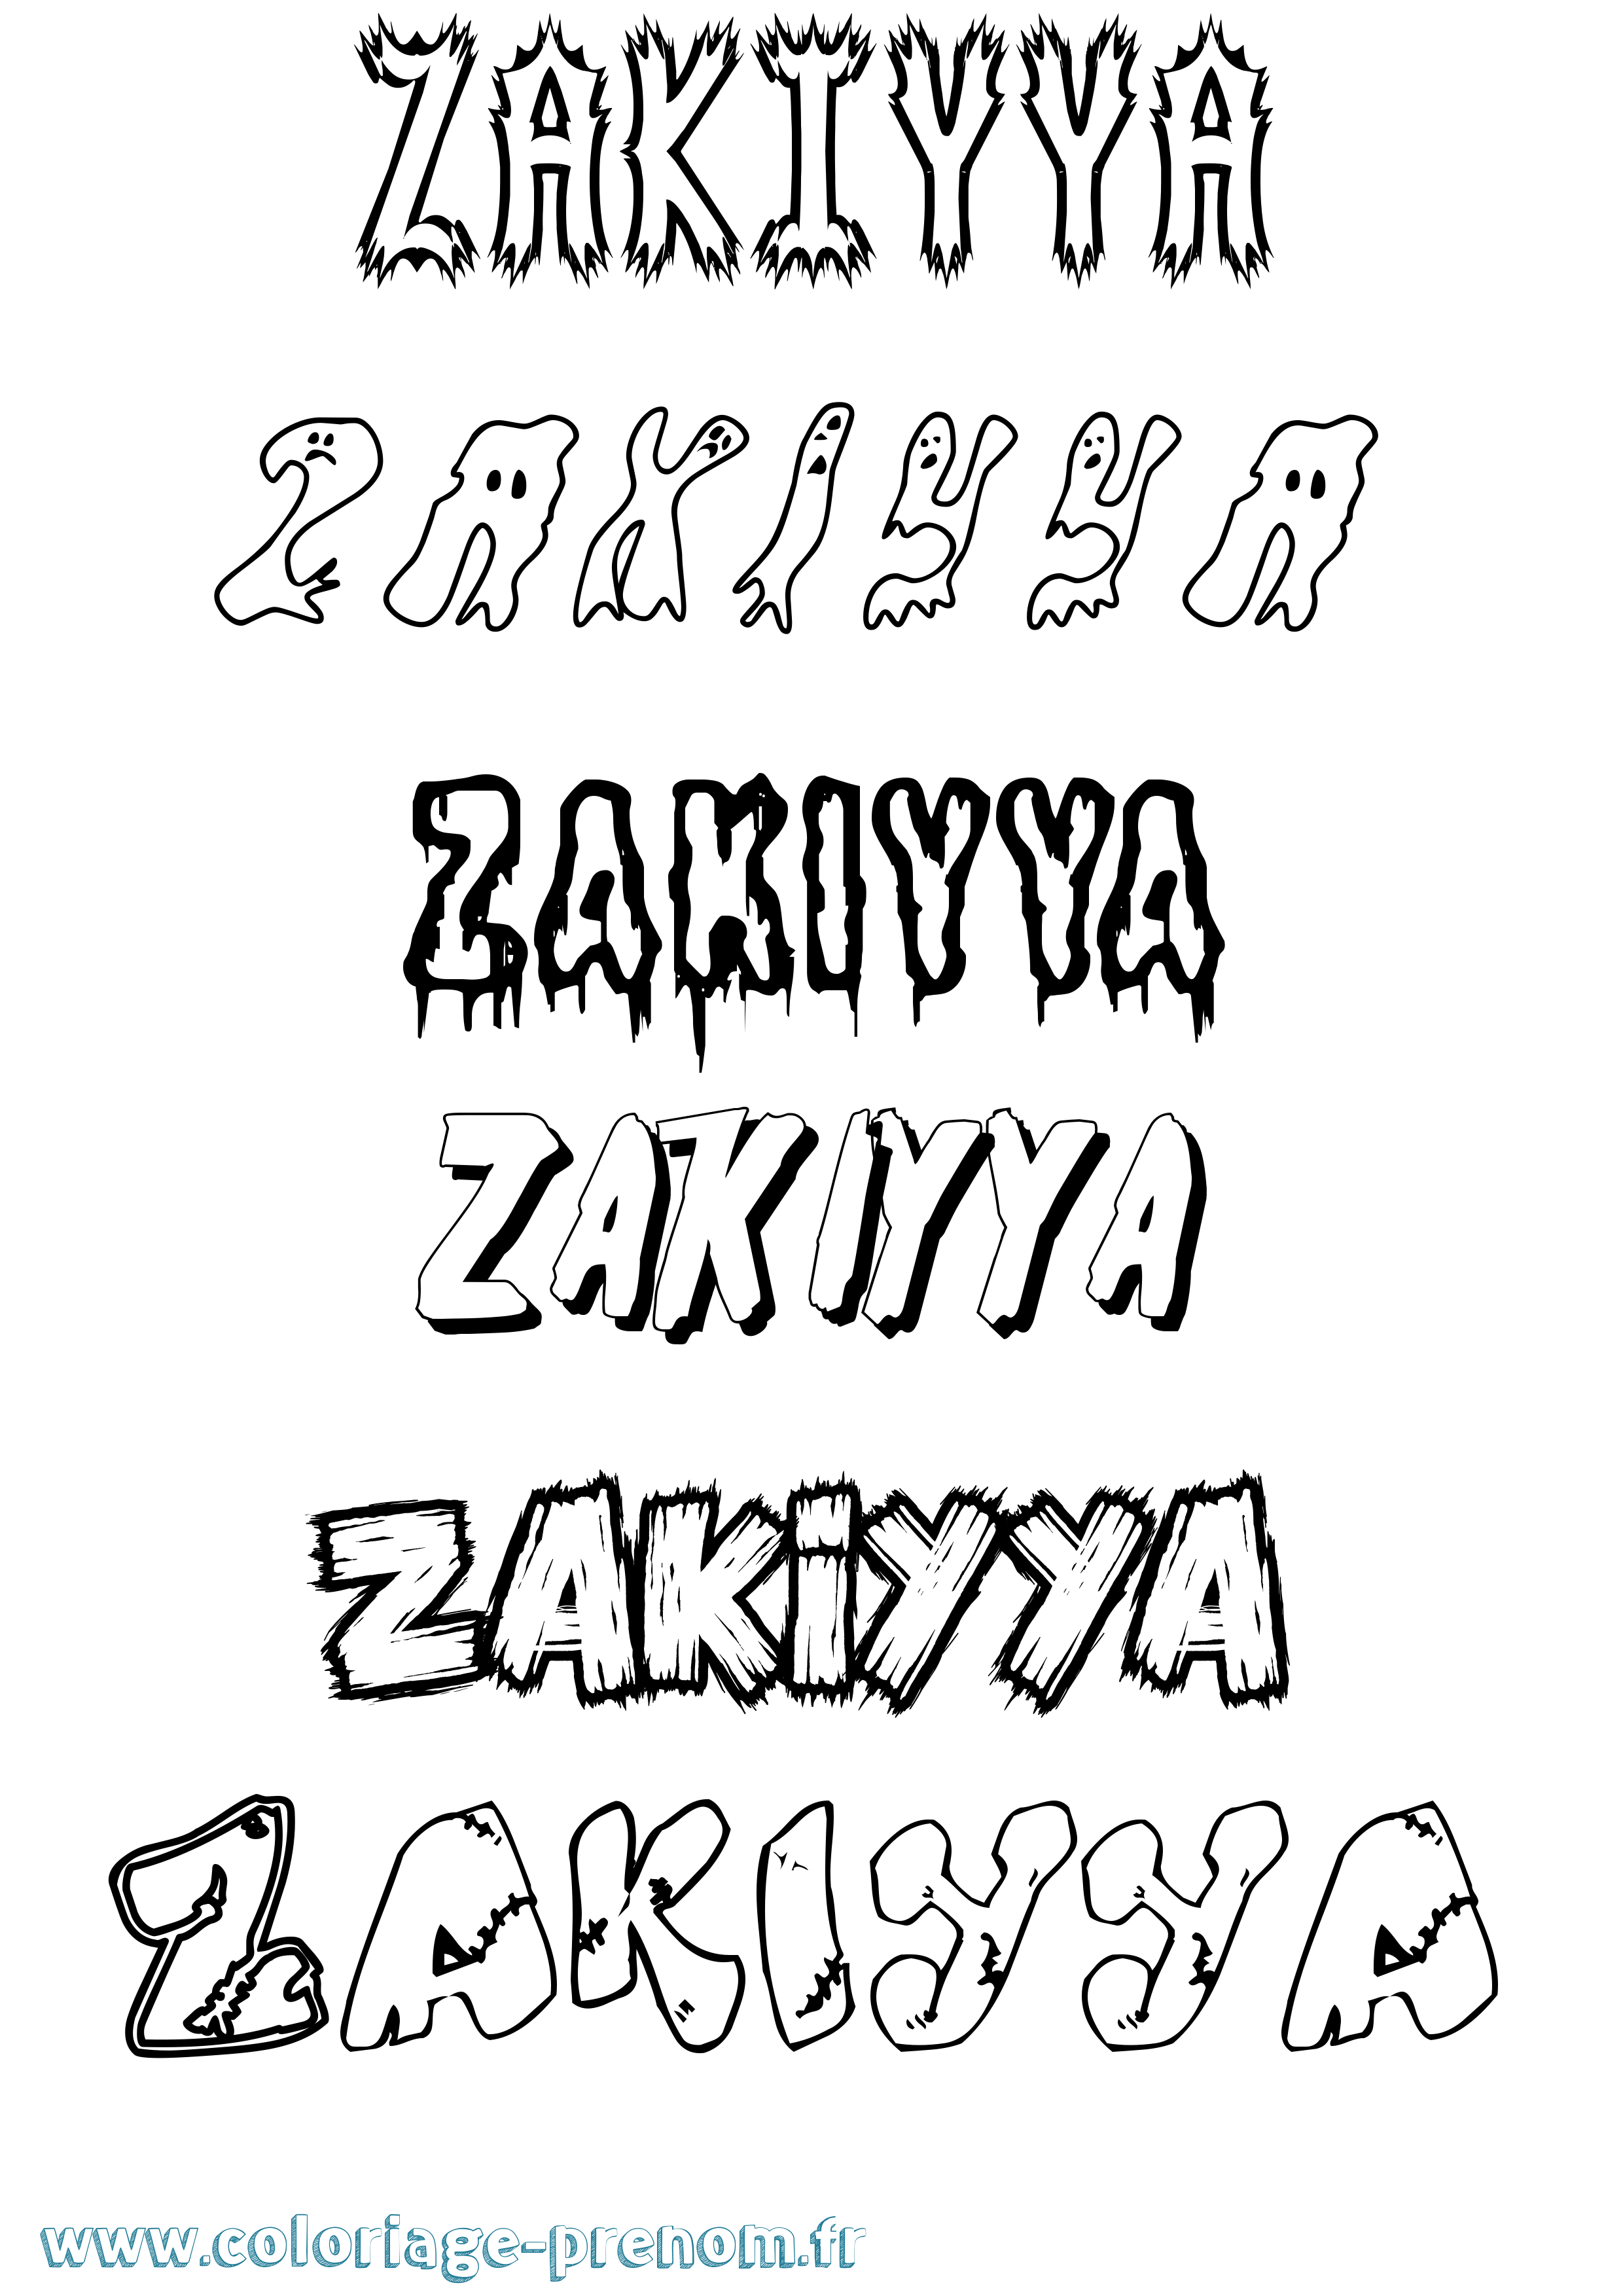 Coloriage prénom Zakiyya Frisson